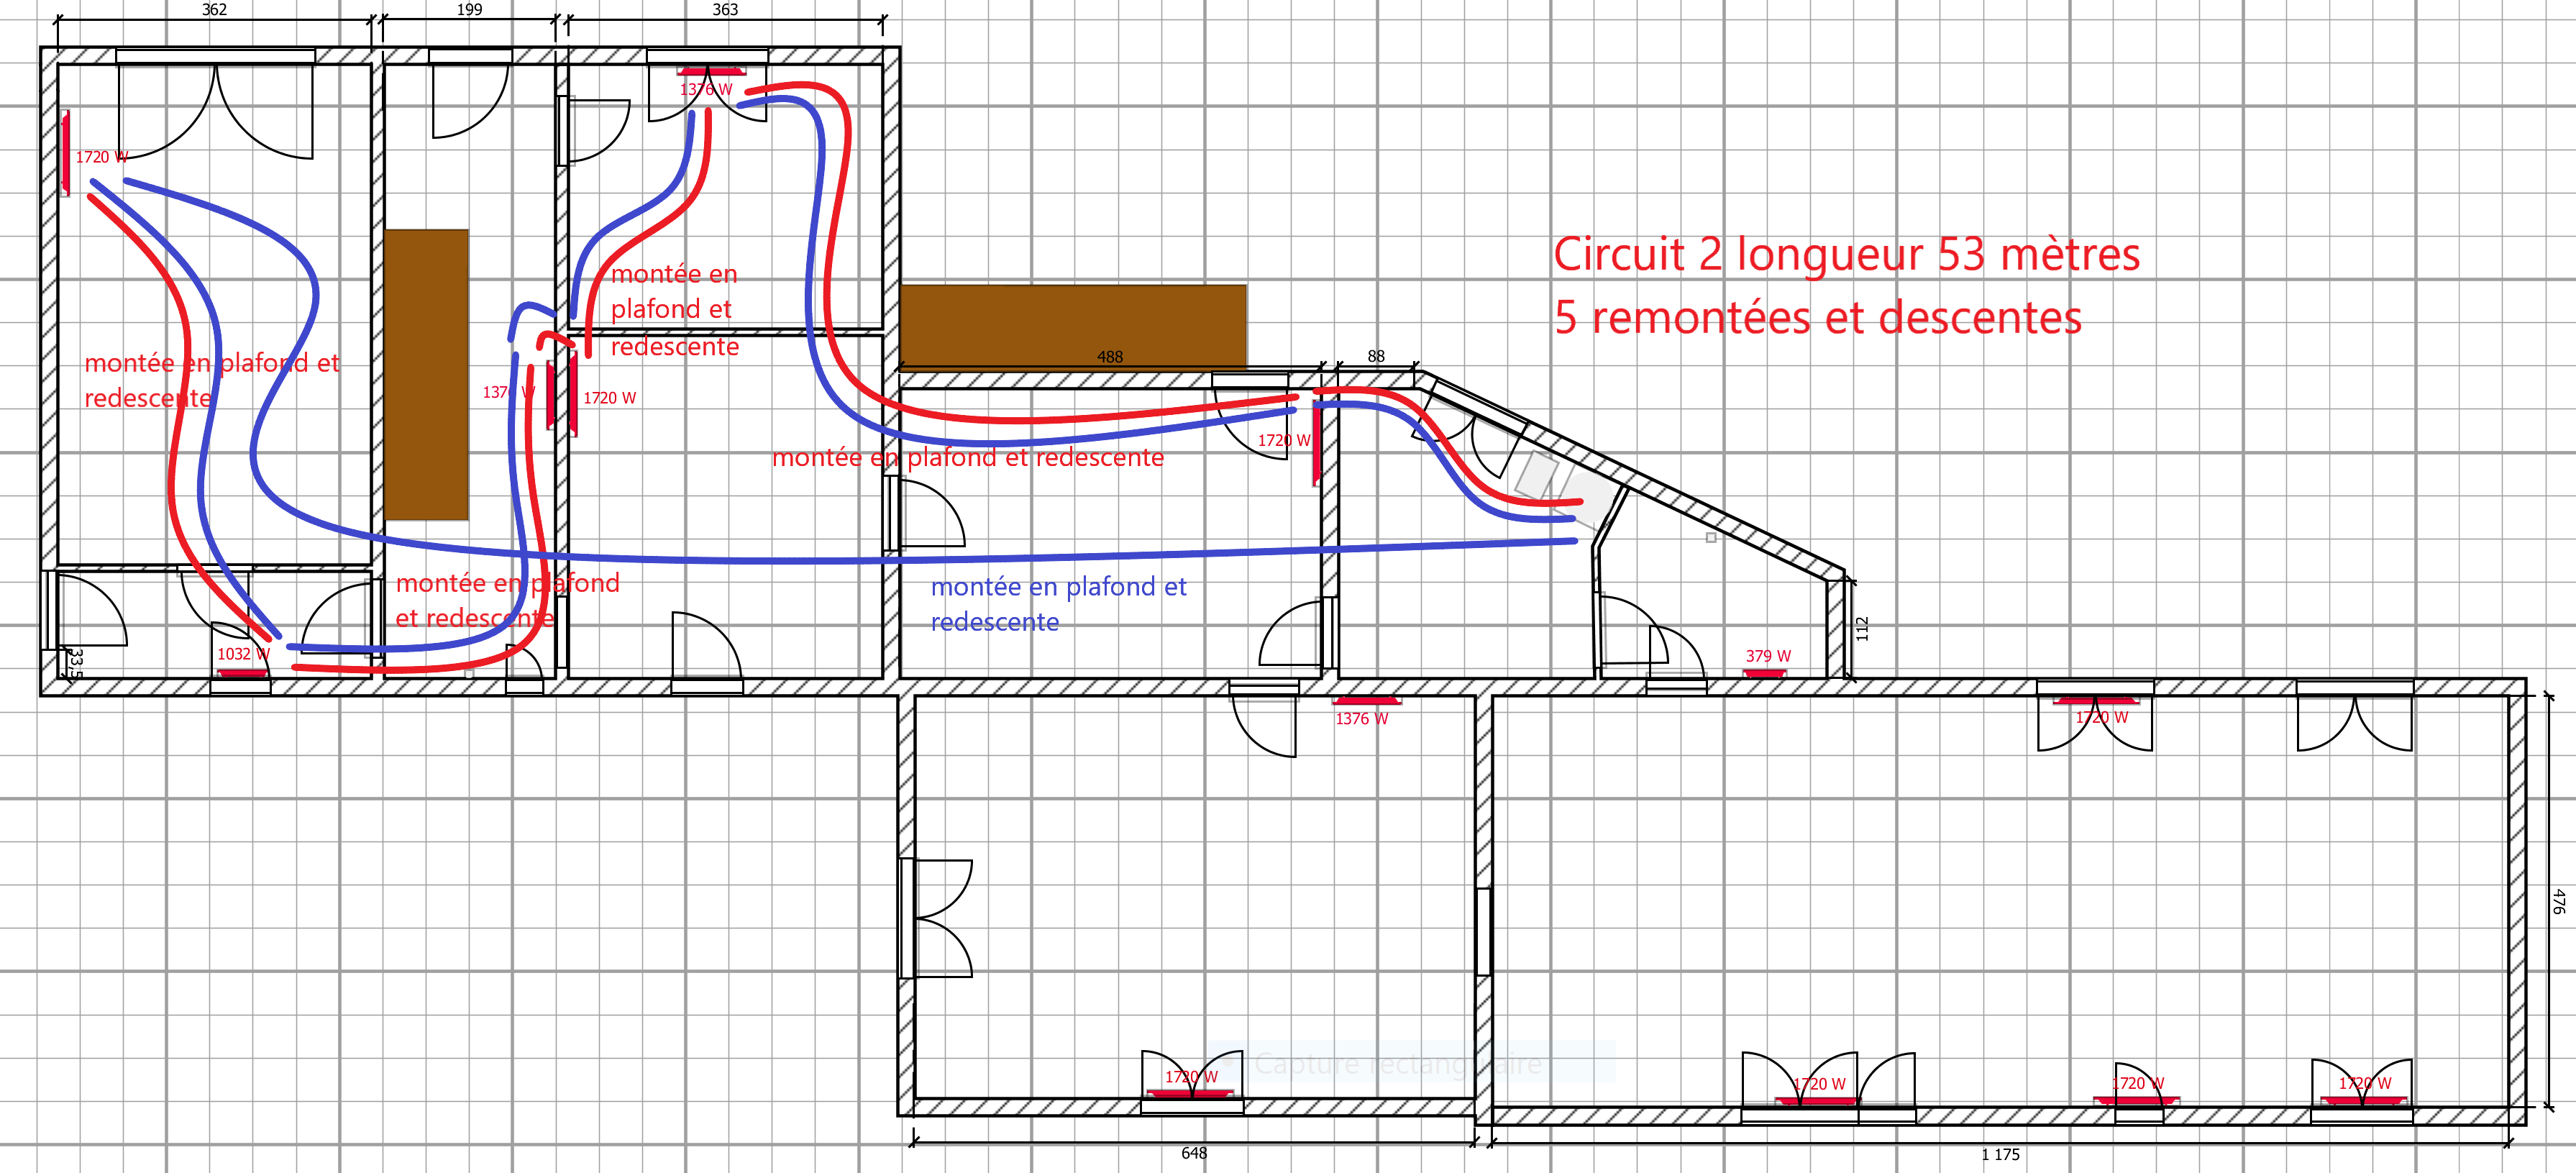 plan circuit 2 RDC.png, 435.5 kb, 3582 x 1631